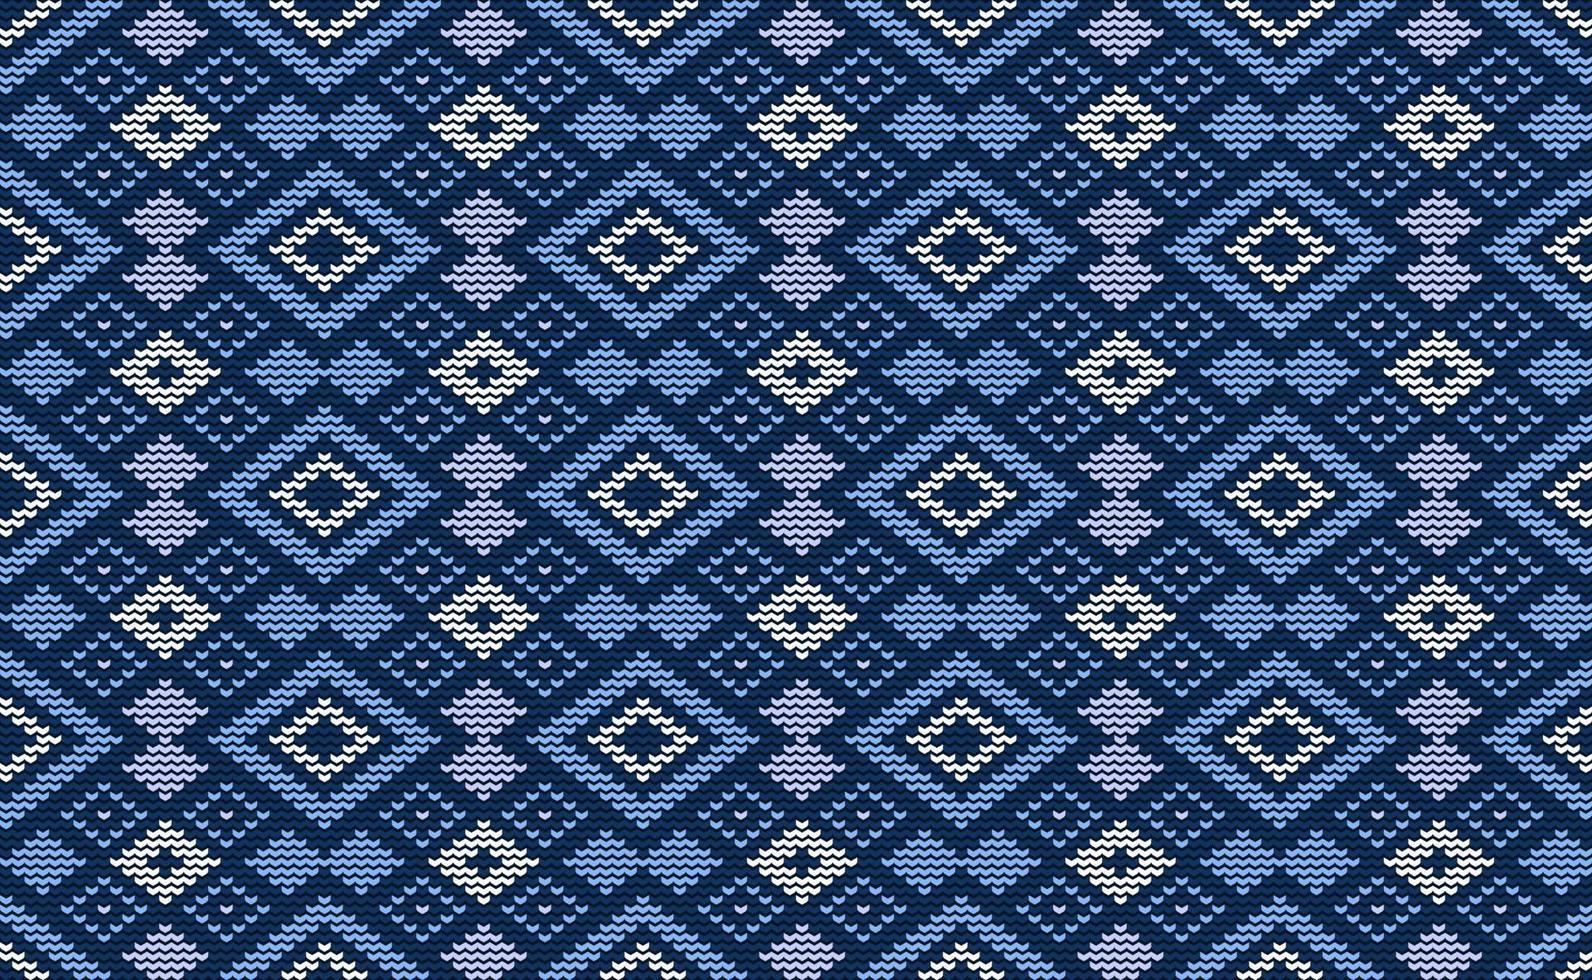 vecteur de motif tricoté bleu et violet, fond diagonal de broderie losange, ikat carré répéter rétro